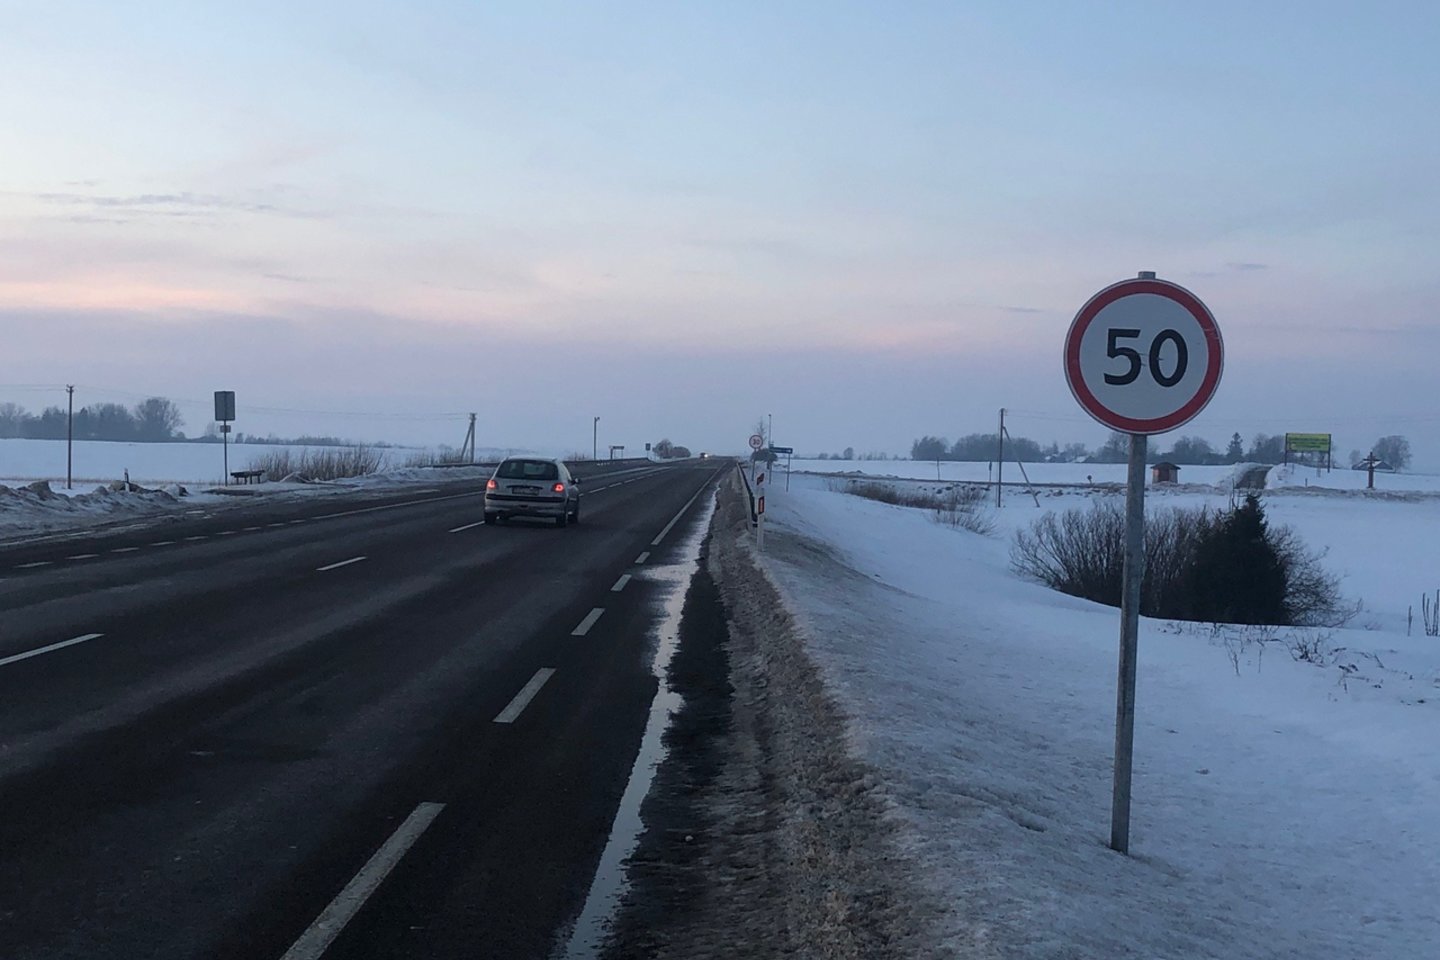  Ties Genių kaimu Alytaus rajone kelio ženklai reikalauja mažinti greitį iki 30 kilometrų per valandą.<br> A.Karaliūno nuotr.